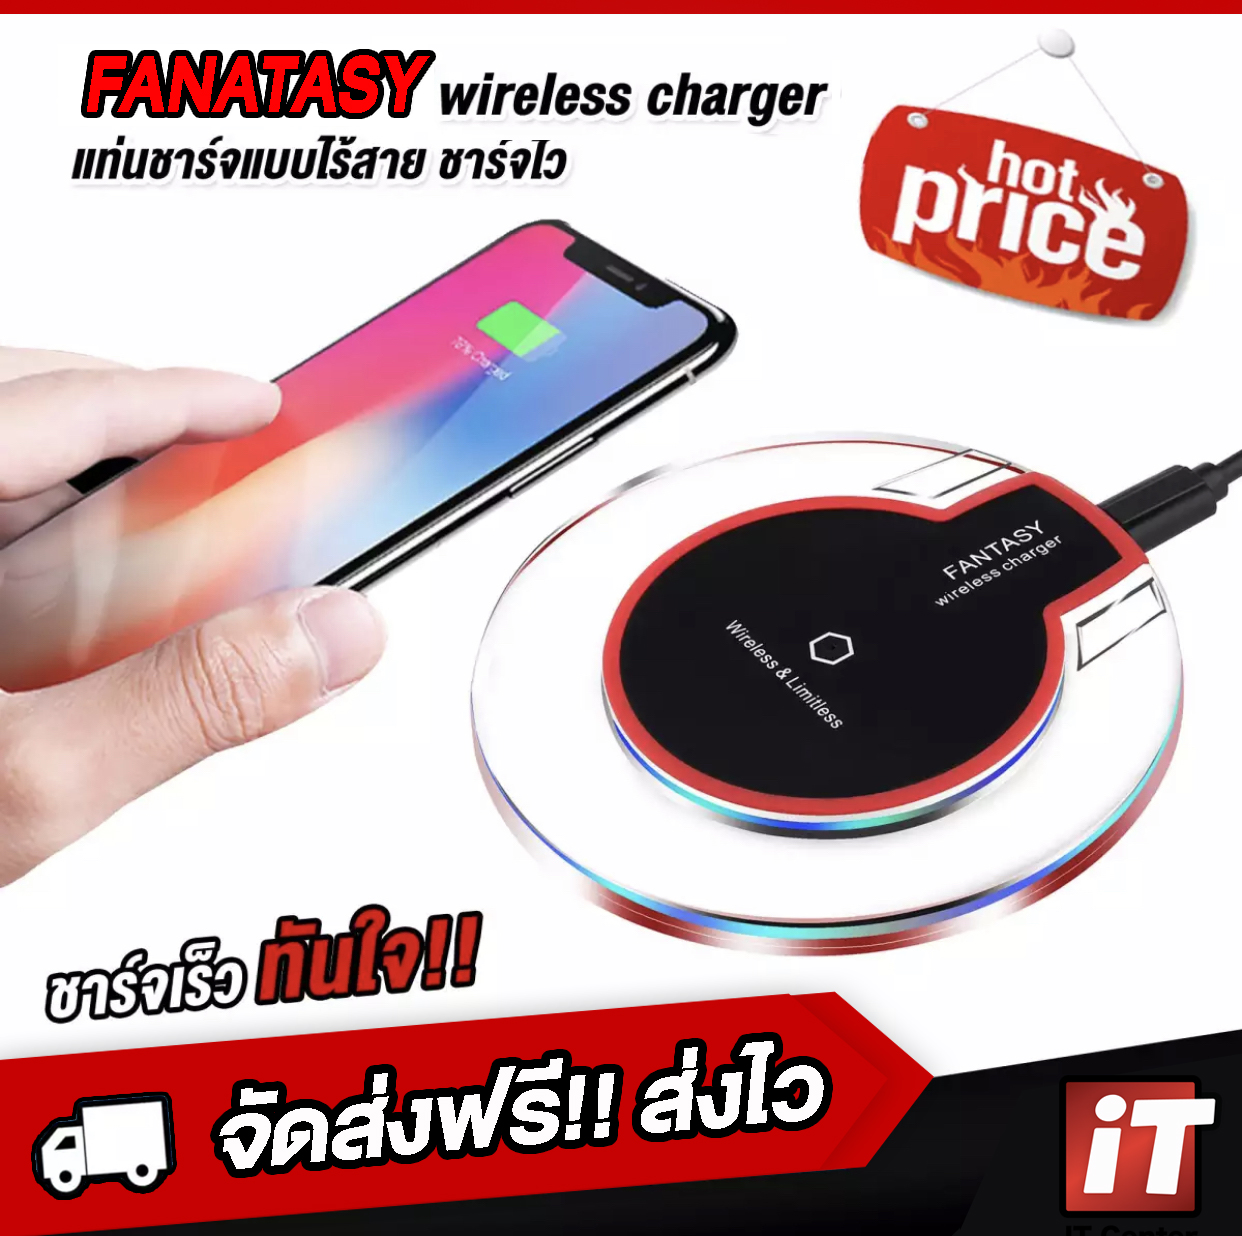 ? แท่นชาร์จไร้สาย ? Fantasy Crystal Wireless Charger Qi Standard รองรับใช้งานกับ Smartphone รุ่นที่รองรับชาร์จไร้สาย